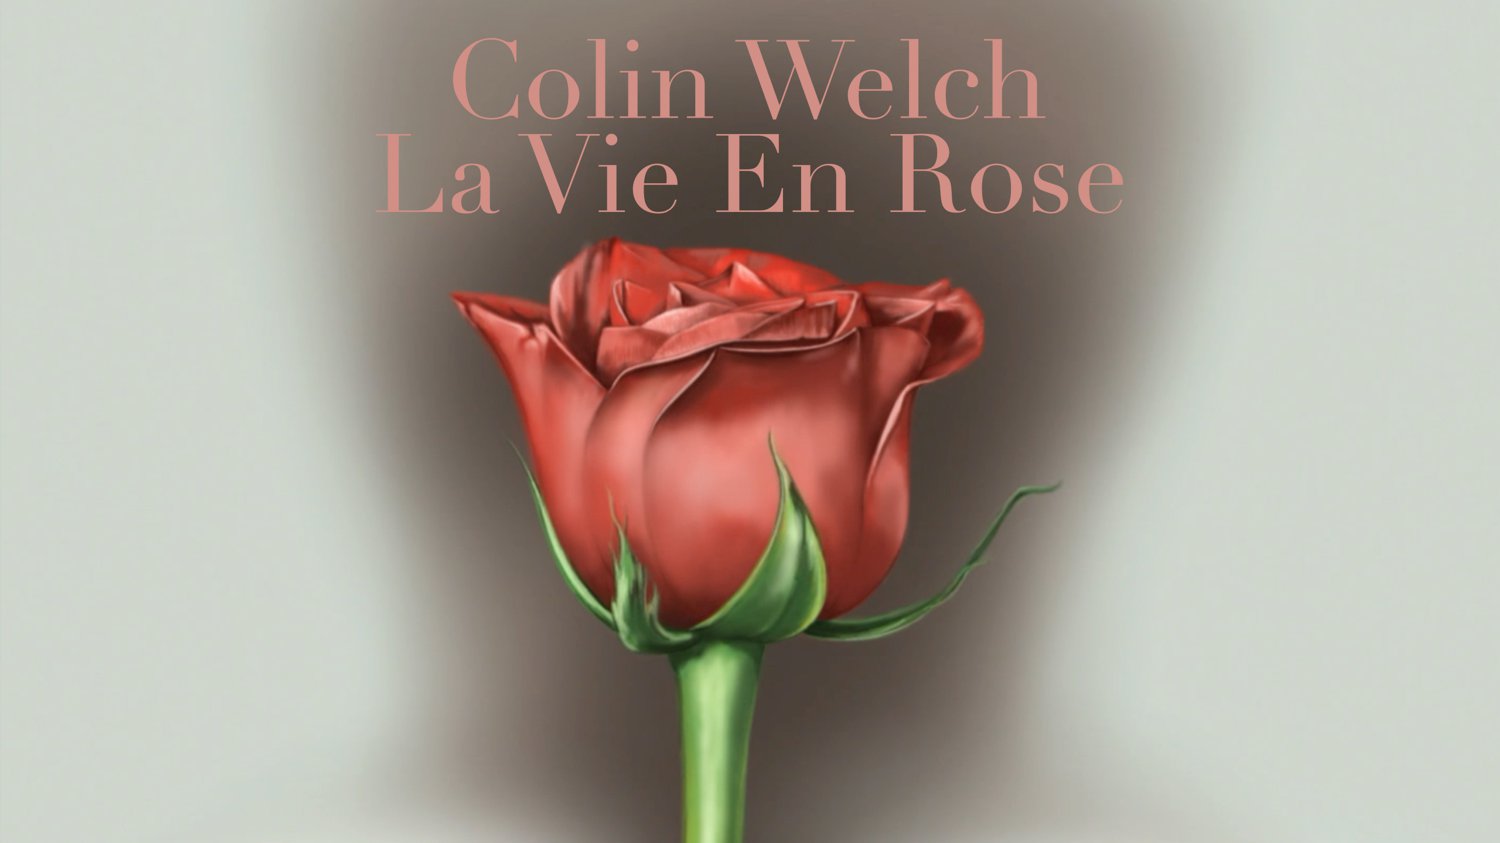 La Vie En Rose - Colin Welch Cover